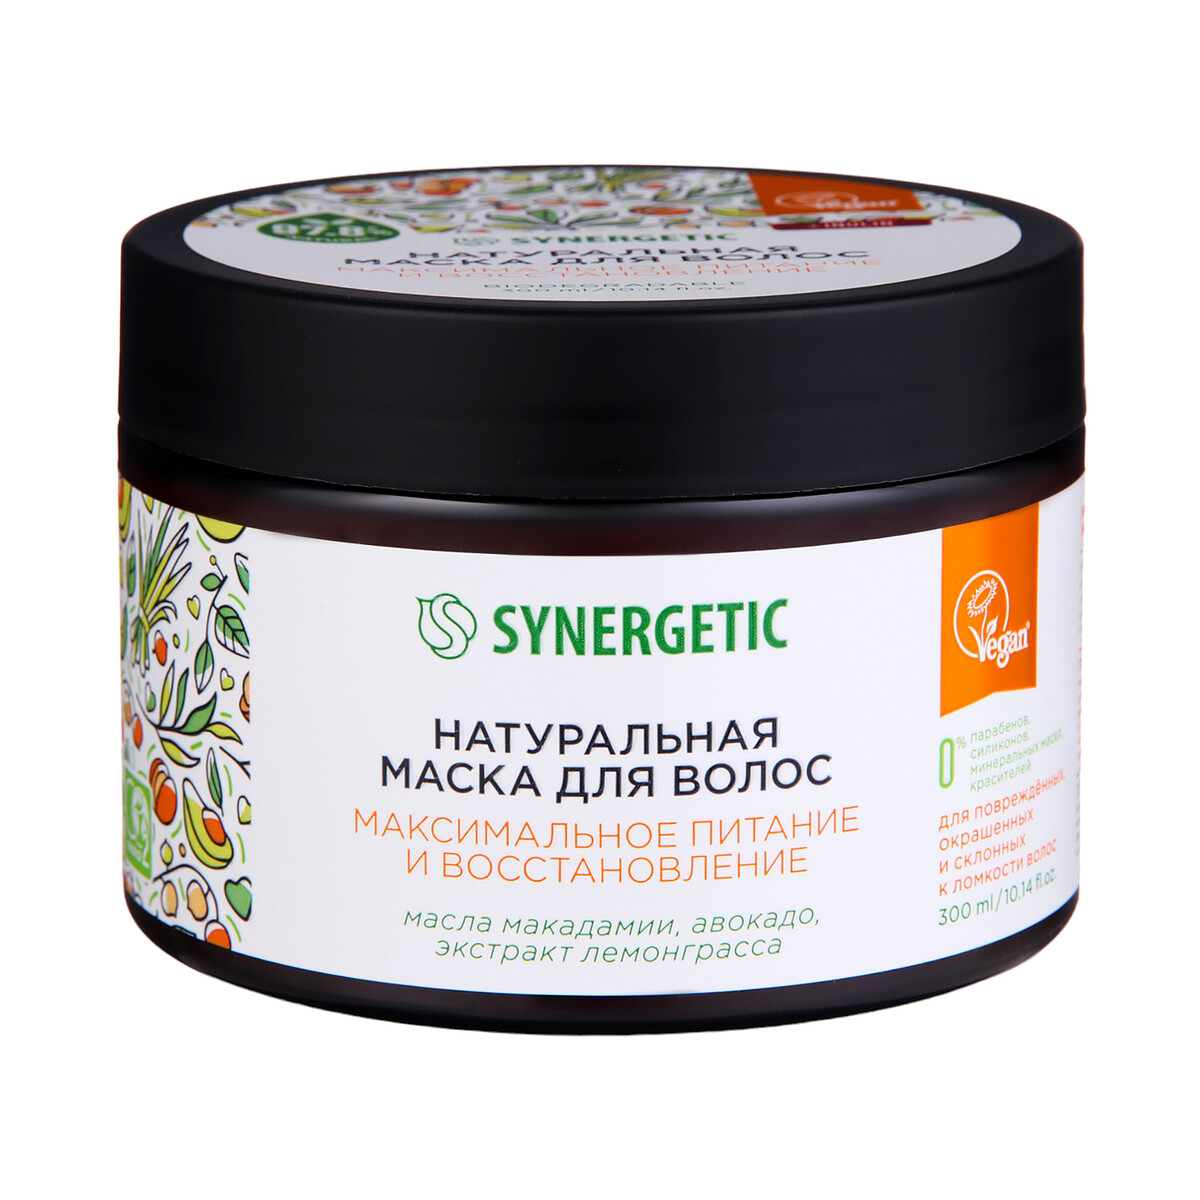 Натуральная маска для волос synergetic максимальное питание и восстановление, 300 мл Synergetic